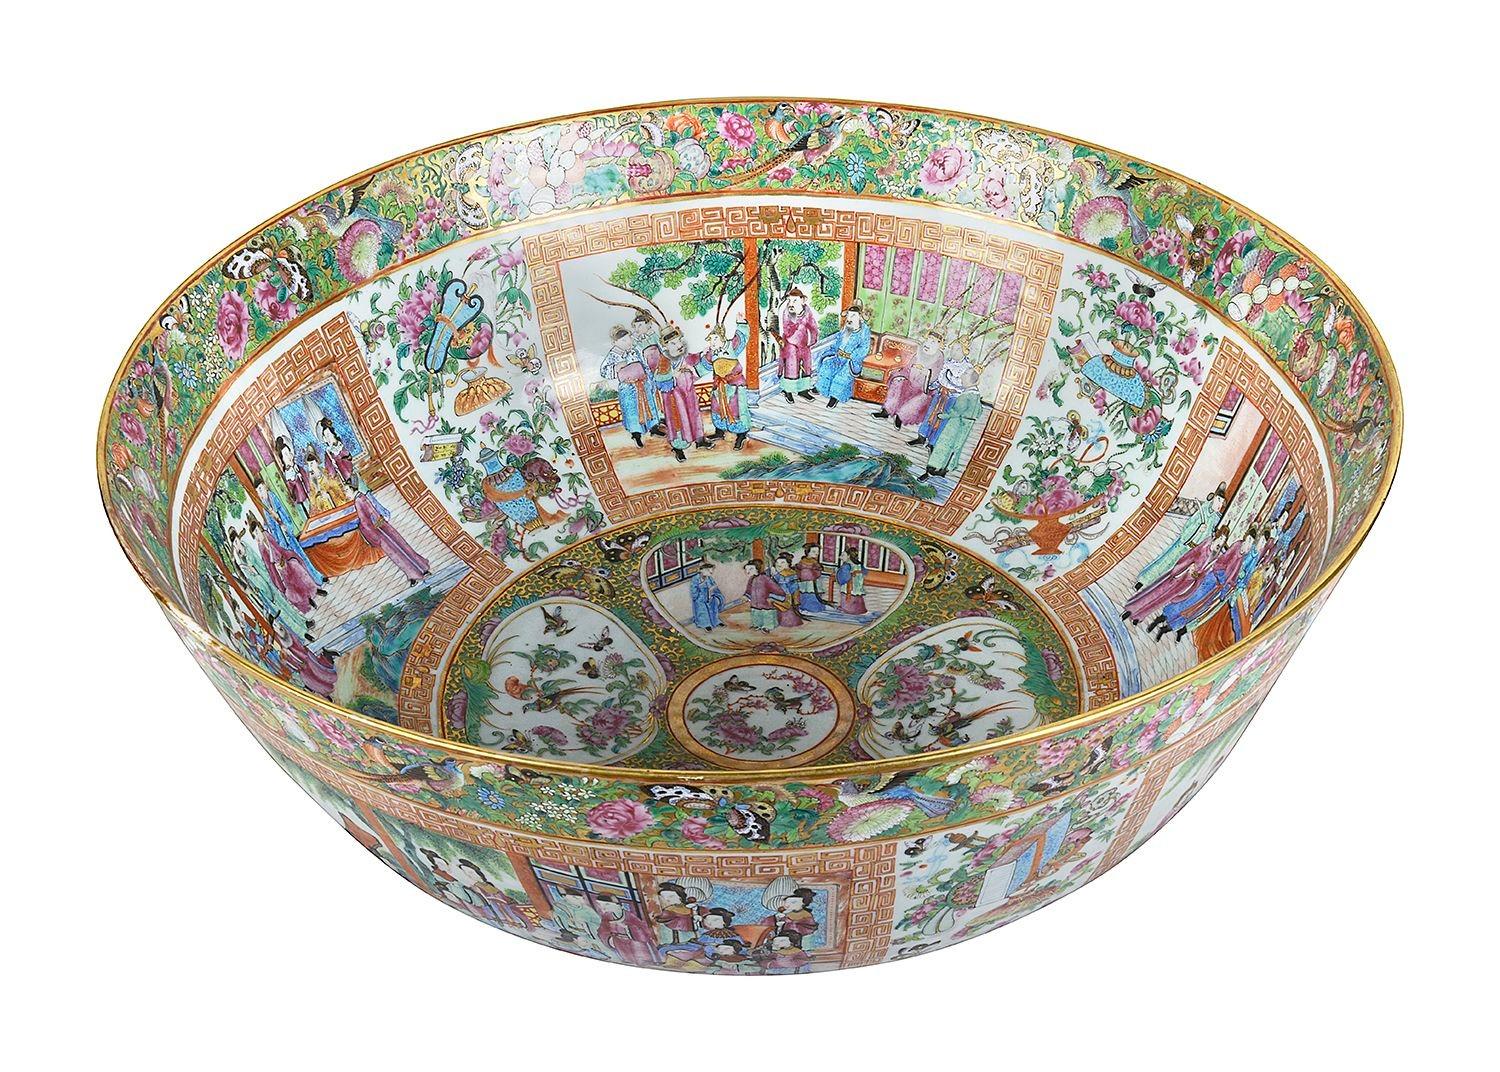 Un grand et impressionnant bol en porcelaine de Canton / Rose médaillon du 19ème siècle. Le fond est d'un vert éclatant et des scènes d'intérieur et de jardin classiques chinoises, peintes à la main et rehaussées de dorures, y sont insérées.
(légère